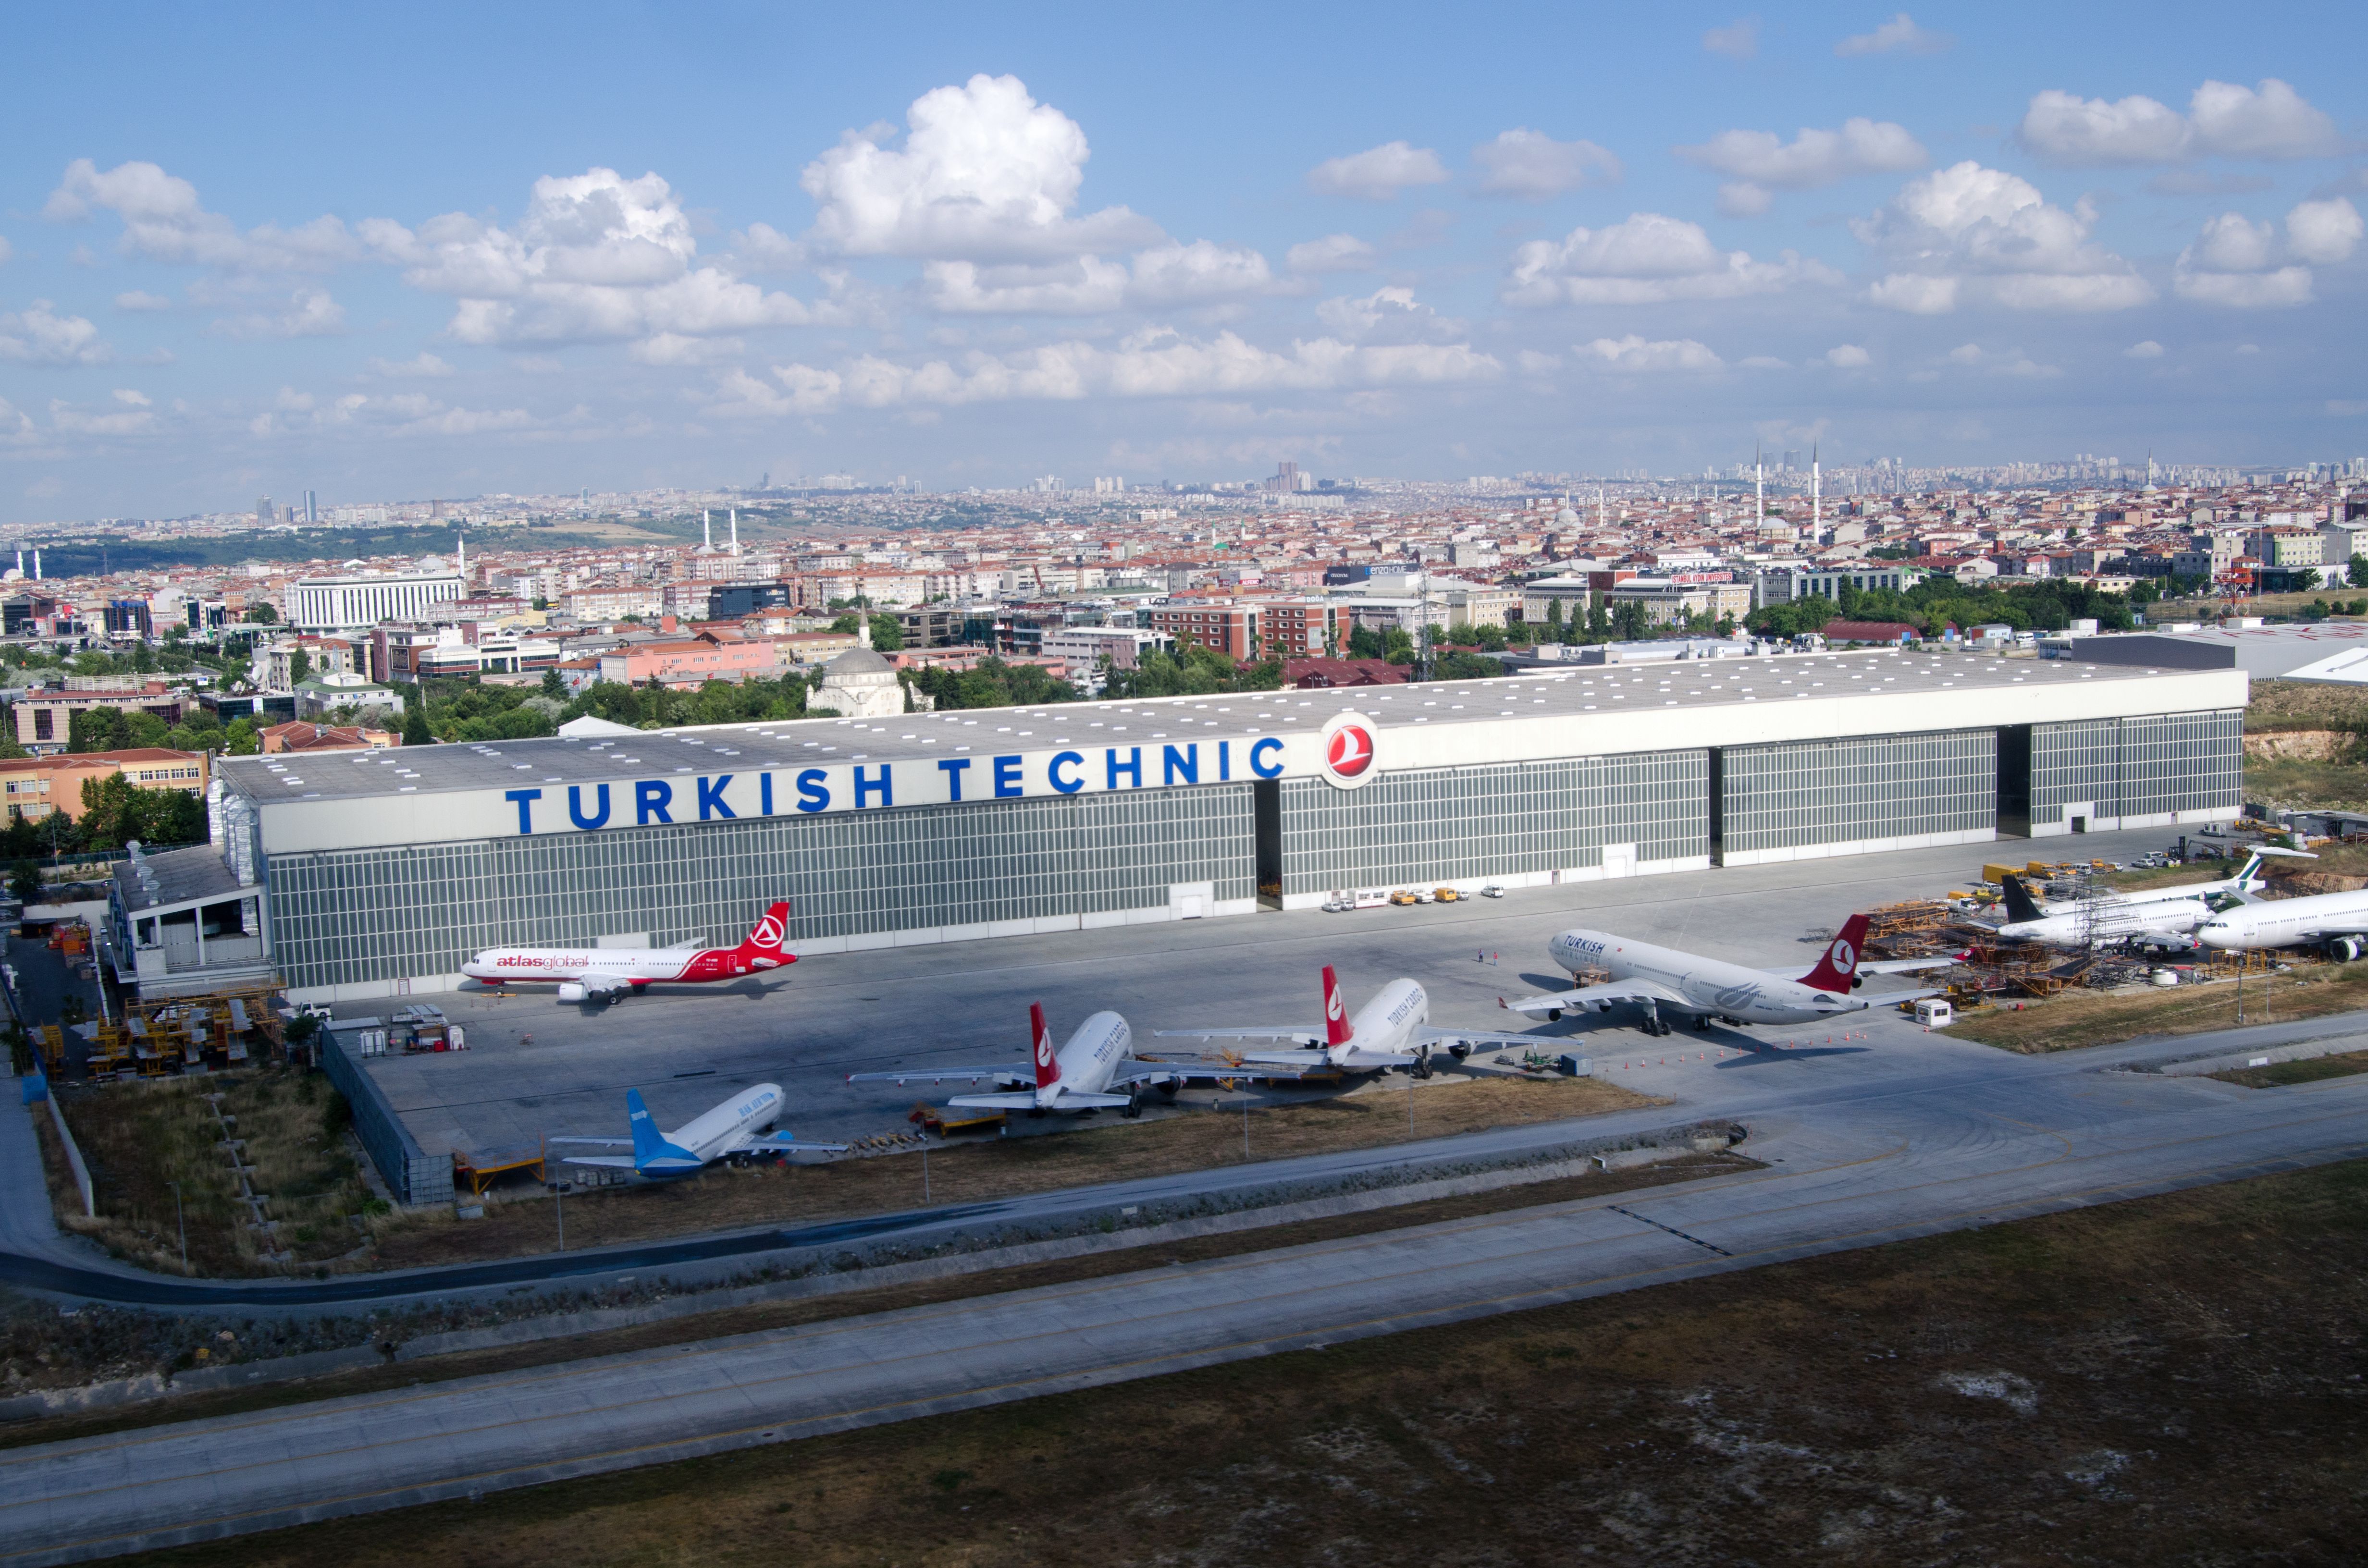 Turkish Technic at Ataturk Airport